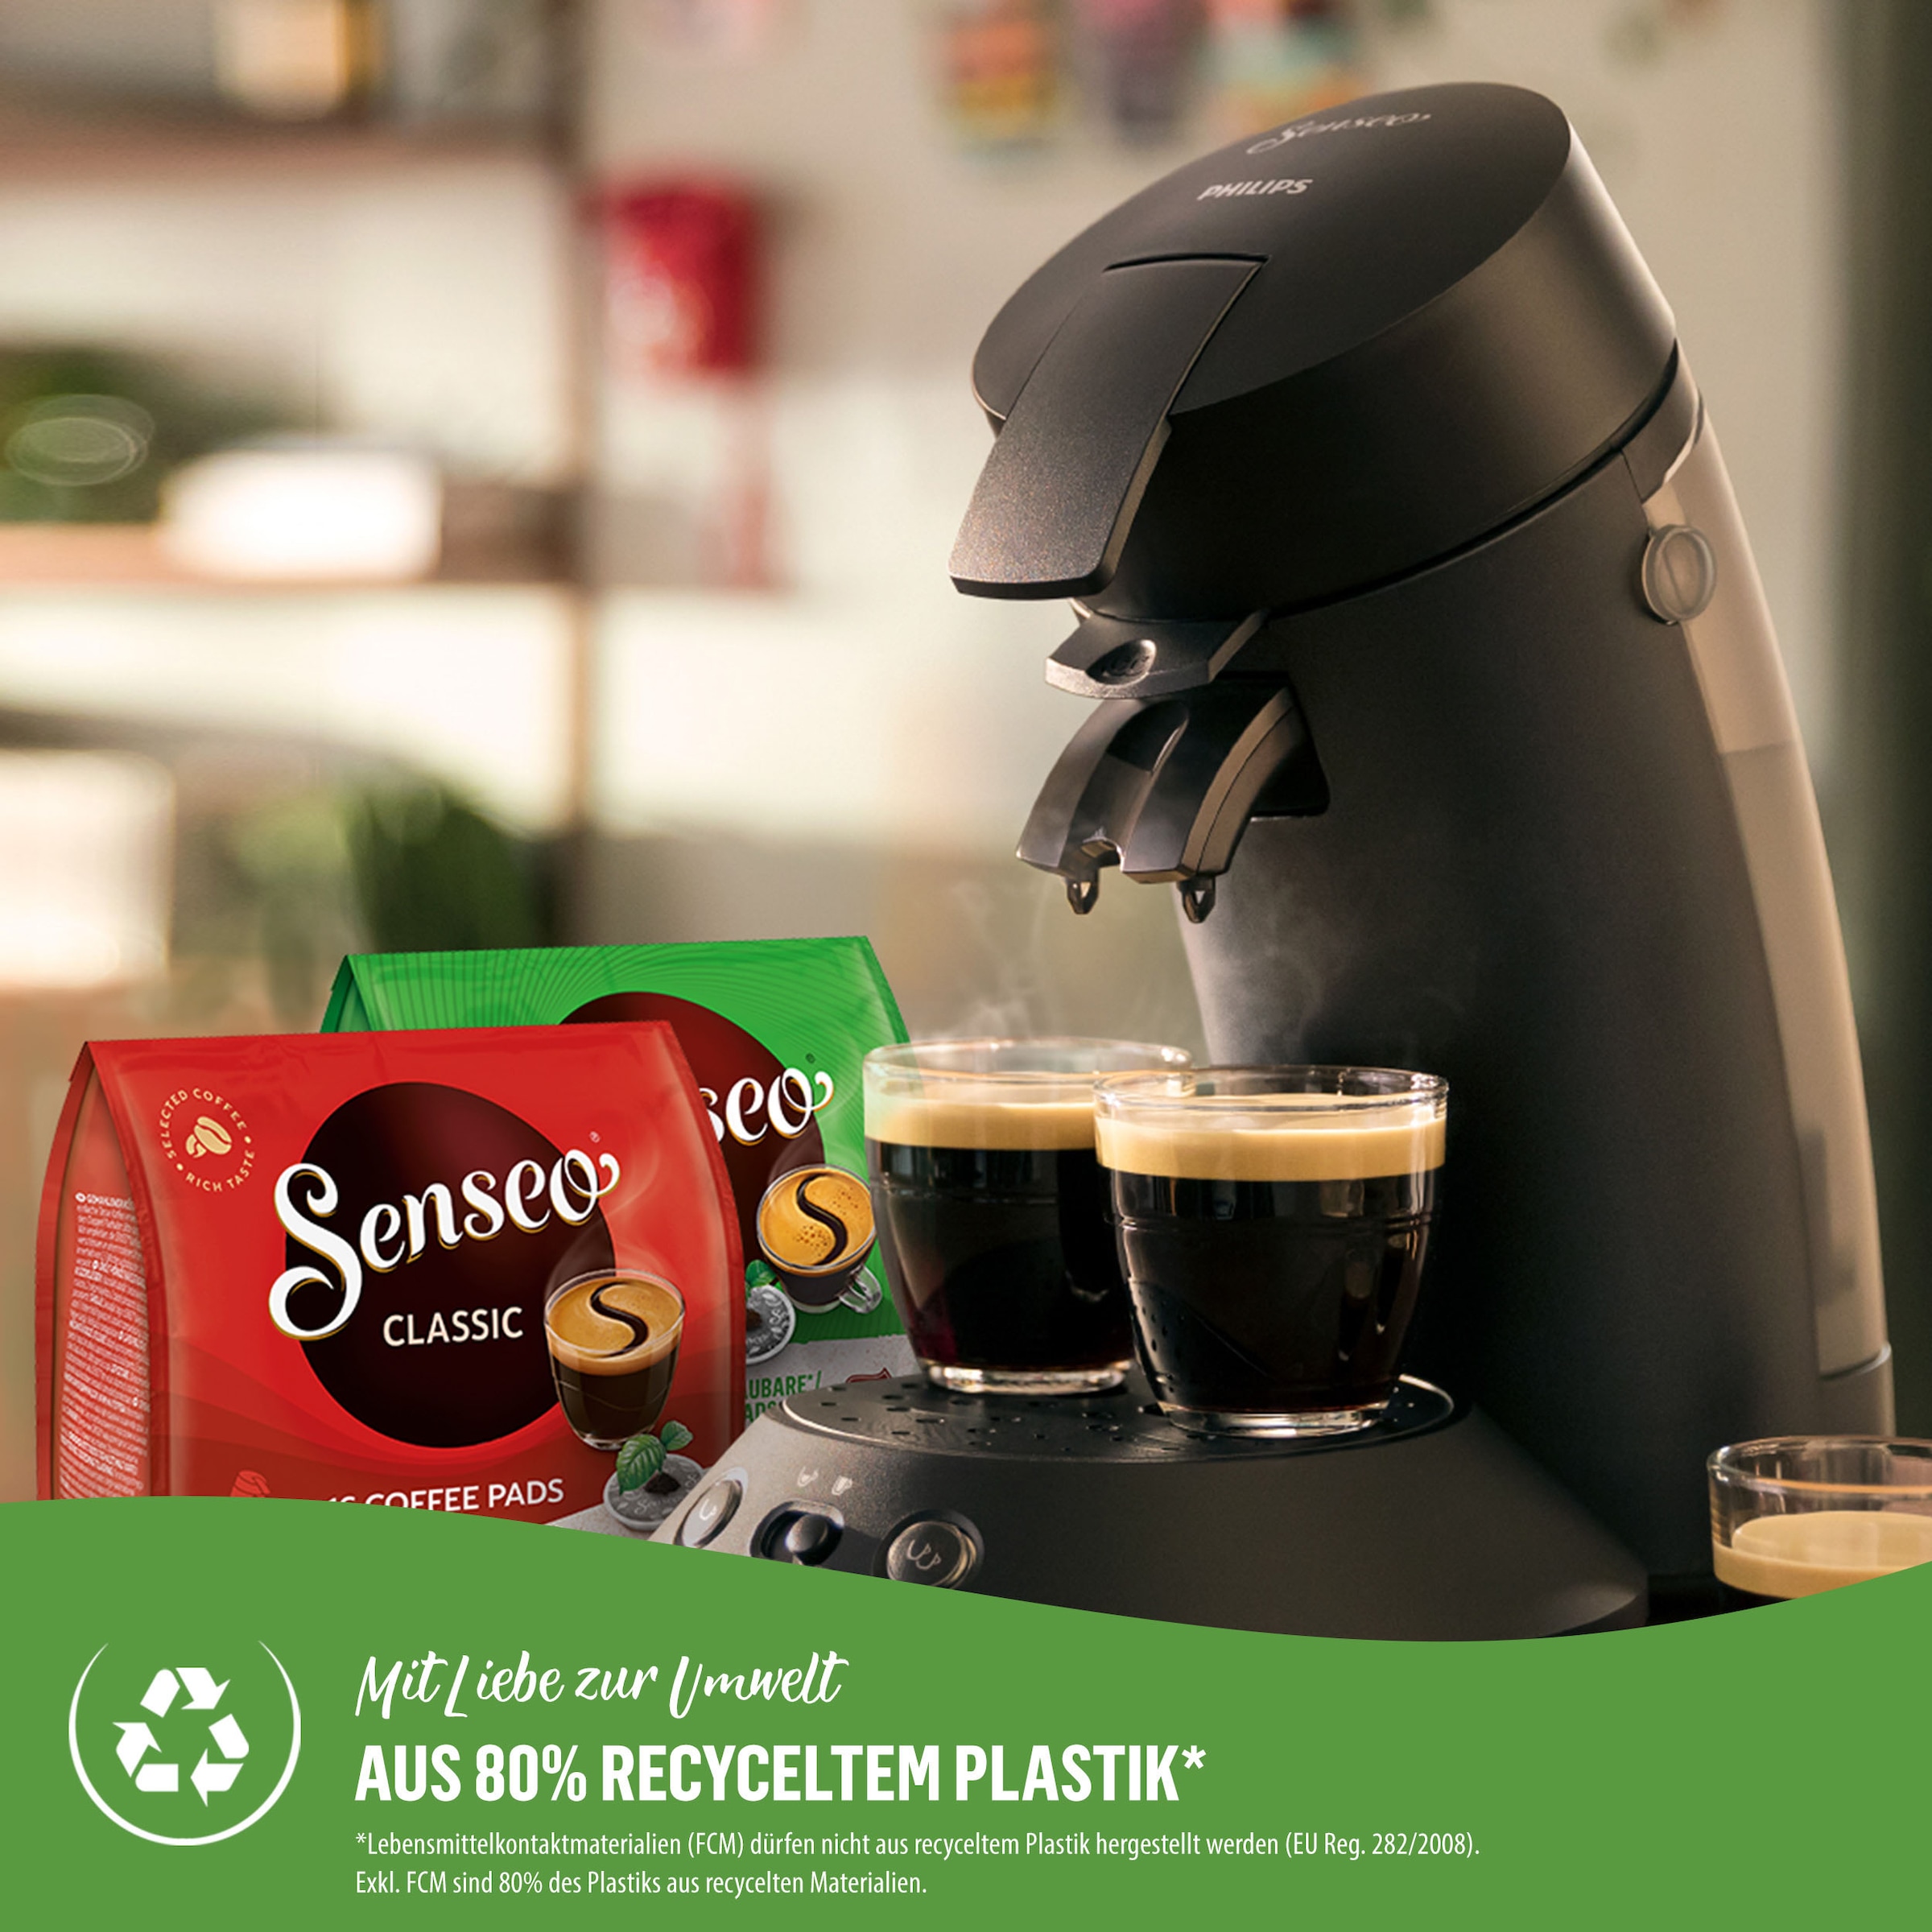 Senseo € CSA210/22, kaufen Senseo zurückerhalten Eco 100 Plus 80% und Plastik*«, Pads »Original Kaffeepadmaschine bis BAUR | Philips aus recyceltem max.33